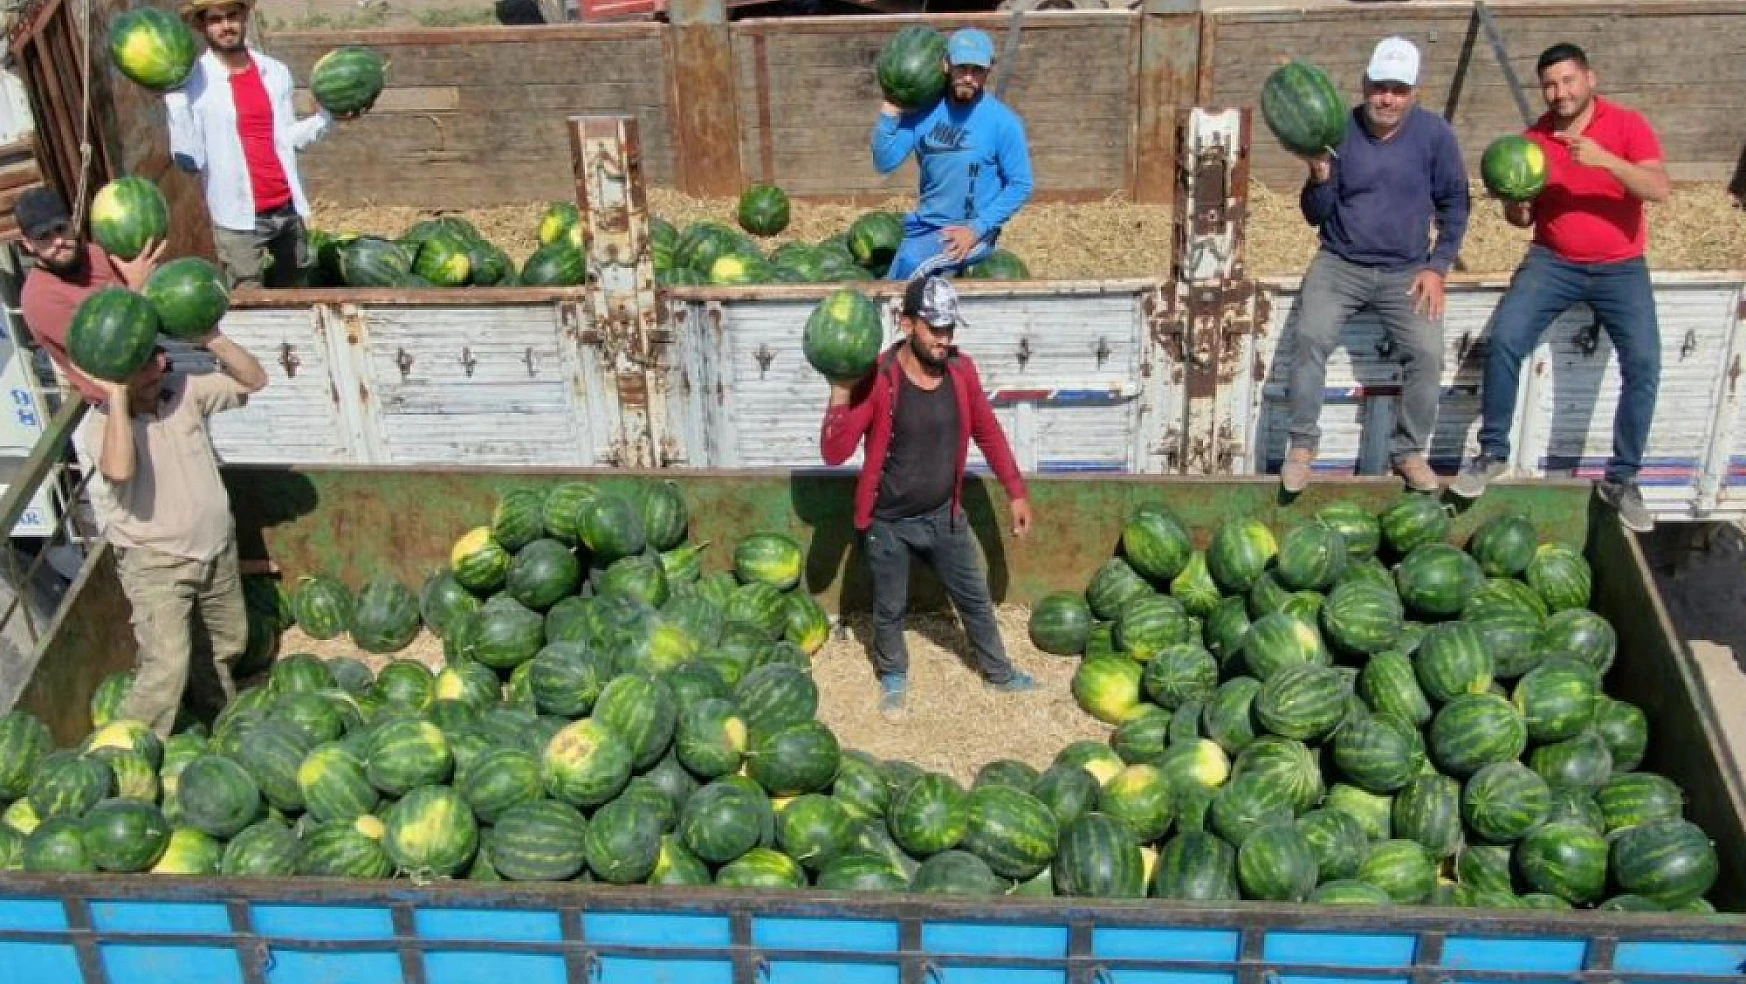 İşçilerin zorlu mesaisi: Adana sıcağında her gün 150 ton karpuz yüklüyorlar